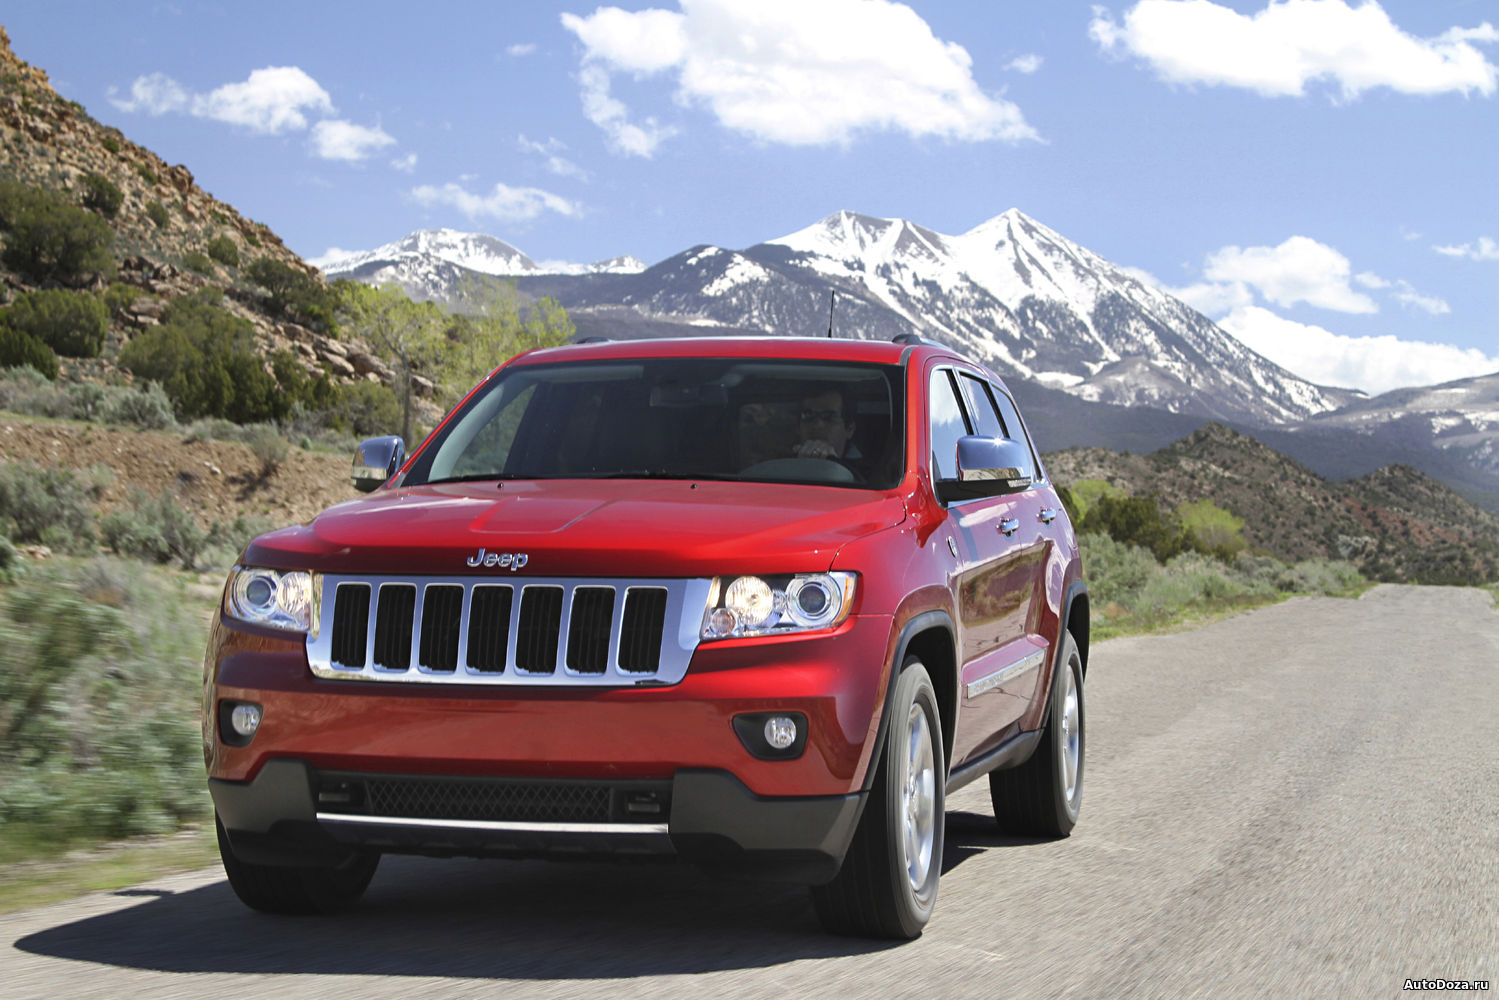 Росстандарт информирует об отзыве 10355 автомобилей Jeep Grand Cherokee